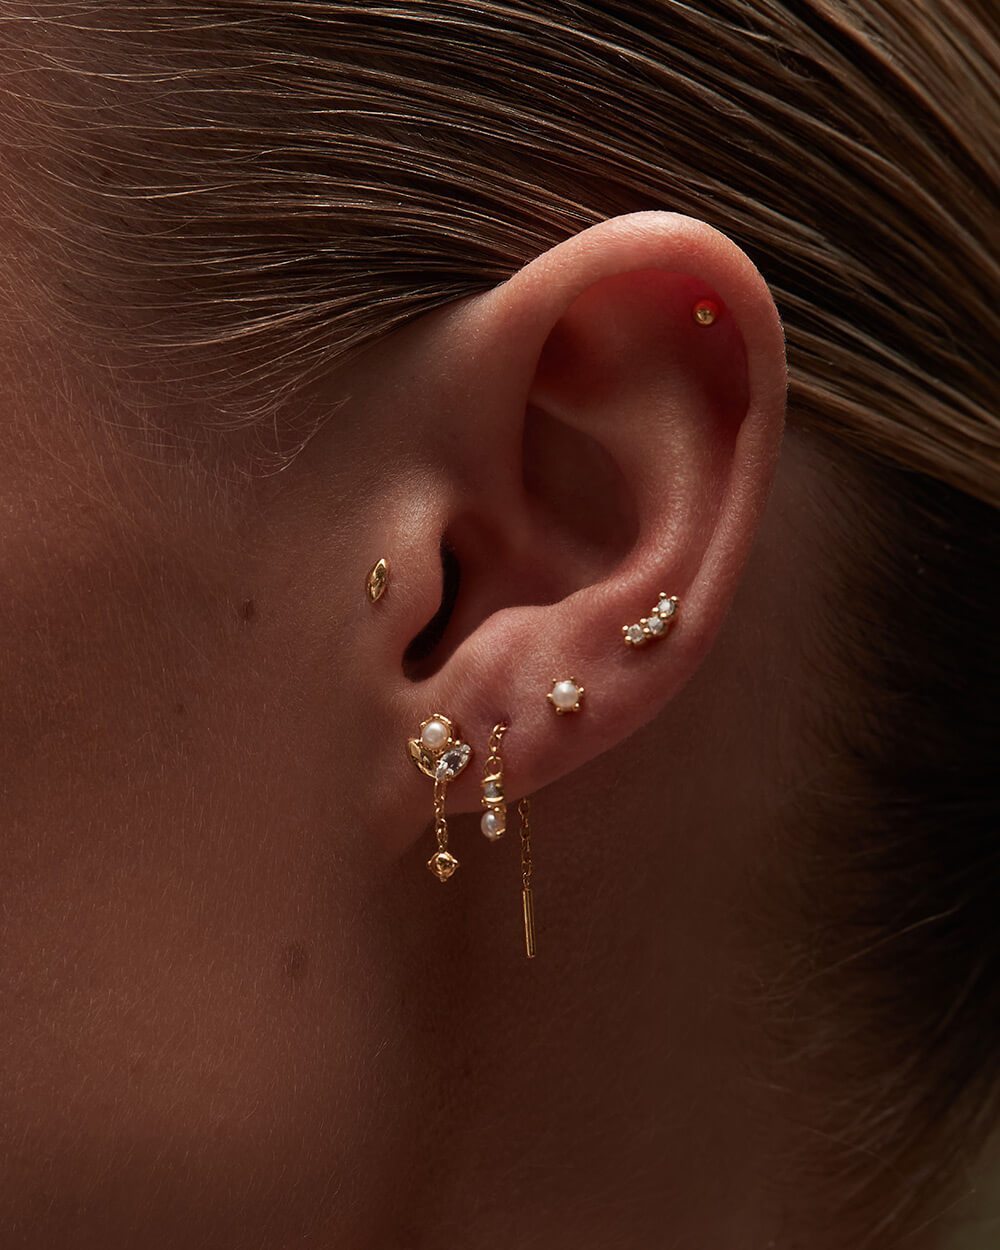 Kirstin Ash Earrings Solid Gold Kirstin Ash petite pearl studs earrings